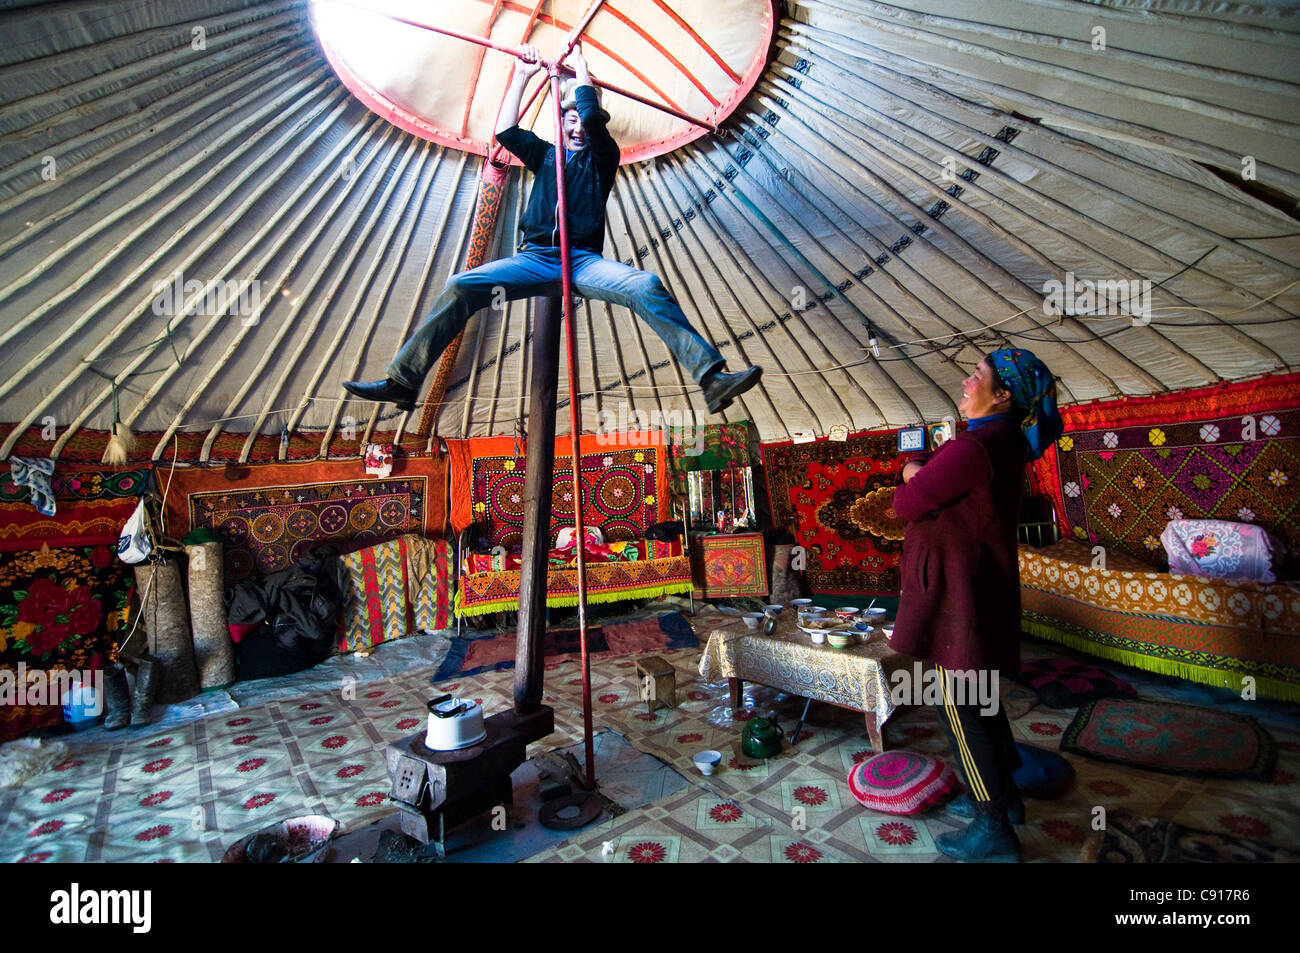 Un coup d'oeil dans une Yourte kazakhe dans l'ouest de la Mongolie. Banque D'Images